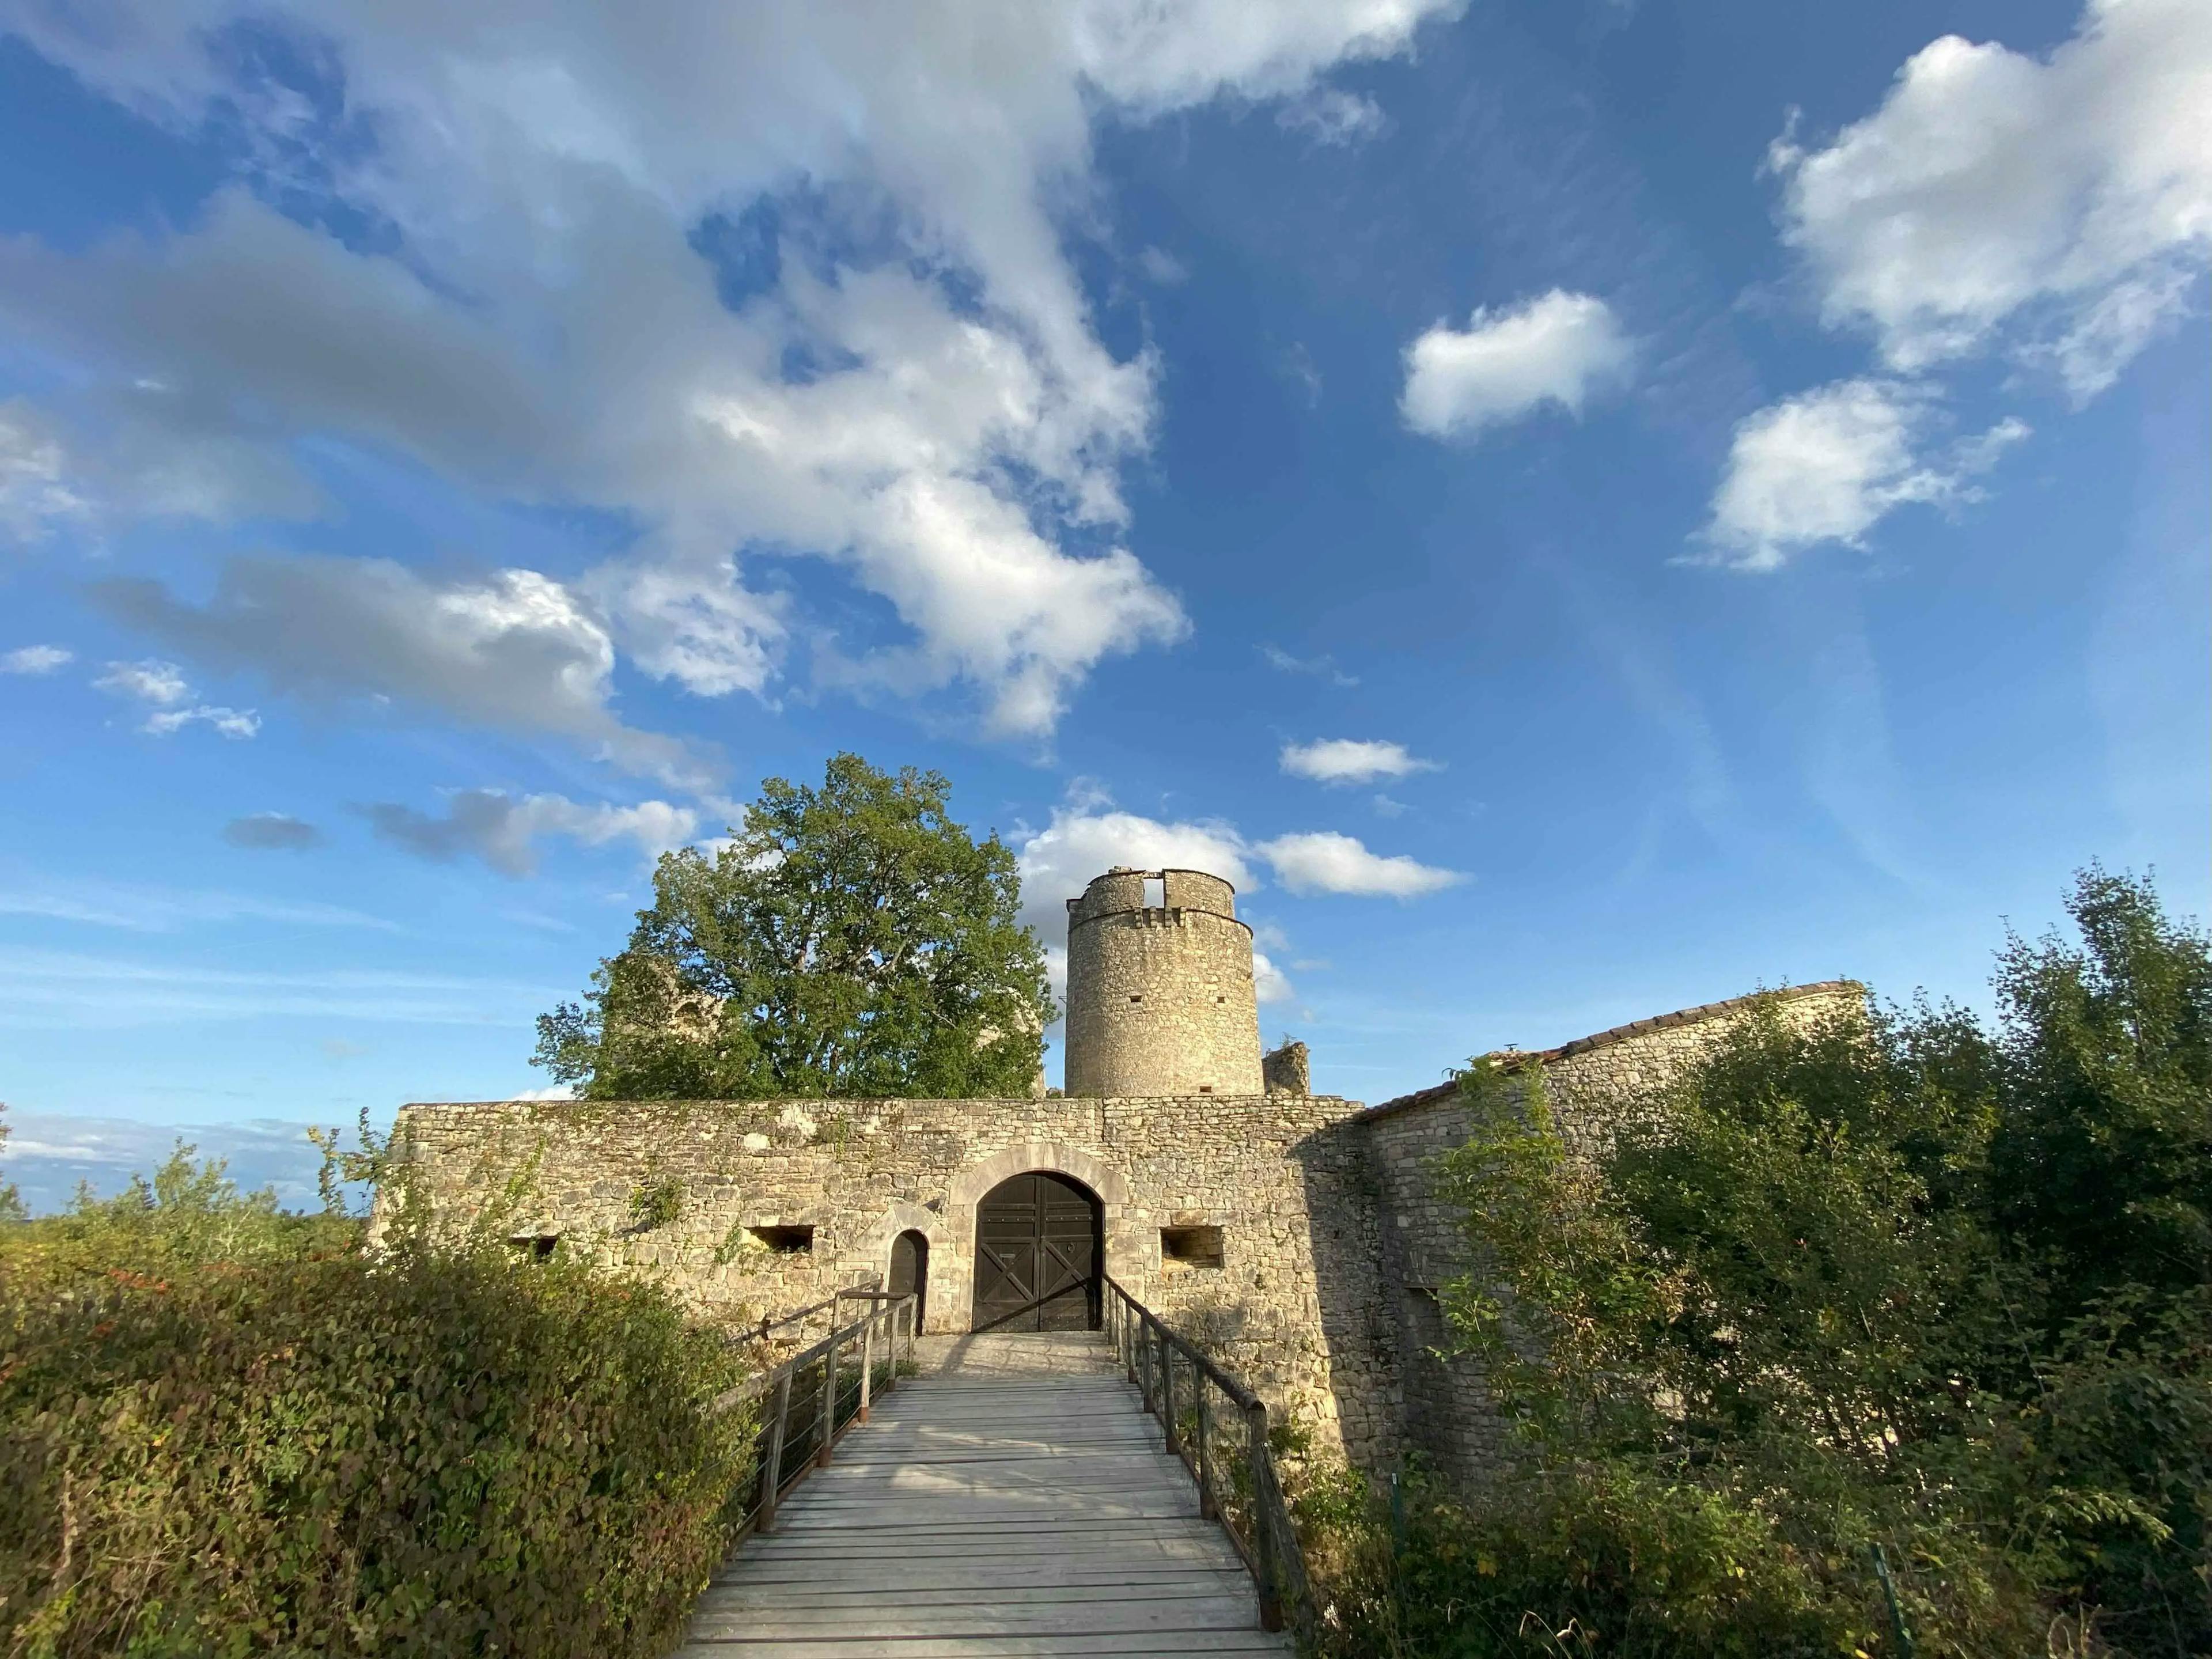 The chateau de Roussillon